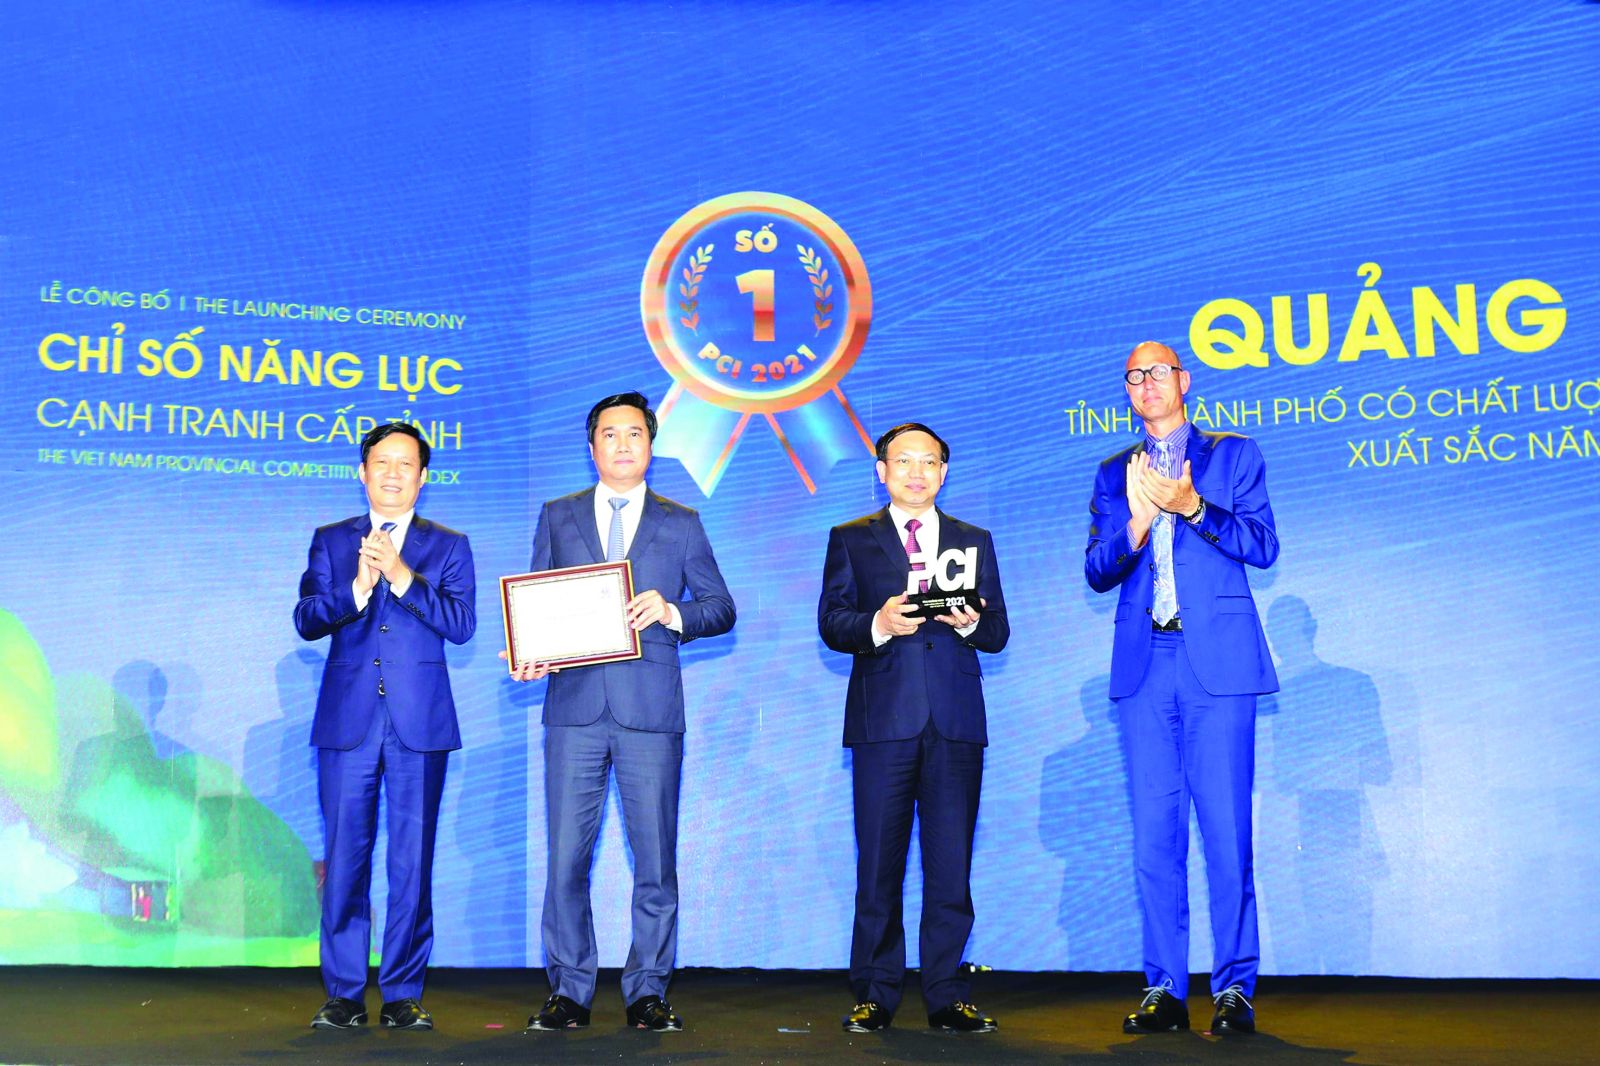  Hiệp hội doanh nghiệp tỉnh Quảng Ninh góp phần không nhỏ đưa Quảng Ninh 5 năm liên tiếp đứng ở vị trí quán quân trong bảng xếp hạng Chỉ số năng lực cạnh tranh cấp tỉnh (PCI).<p/>(Ảnh: Lãnh đạo tỉnh Quảng Ninh nhận cúp quán quân PCI danh giá lần thứ 5 liên tiếp)